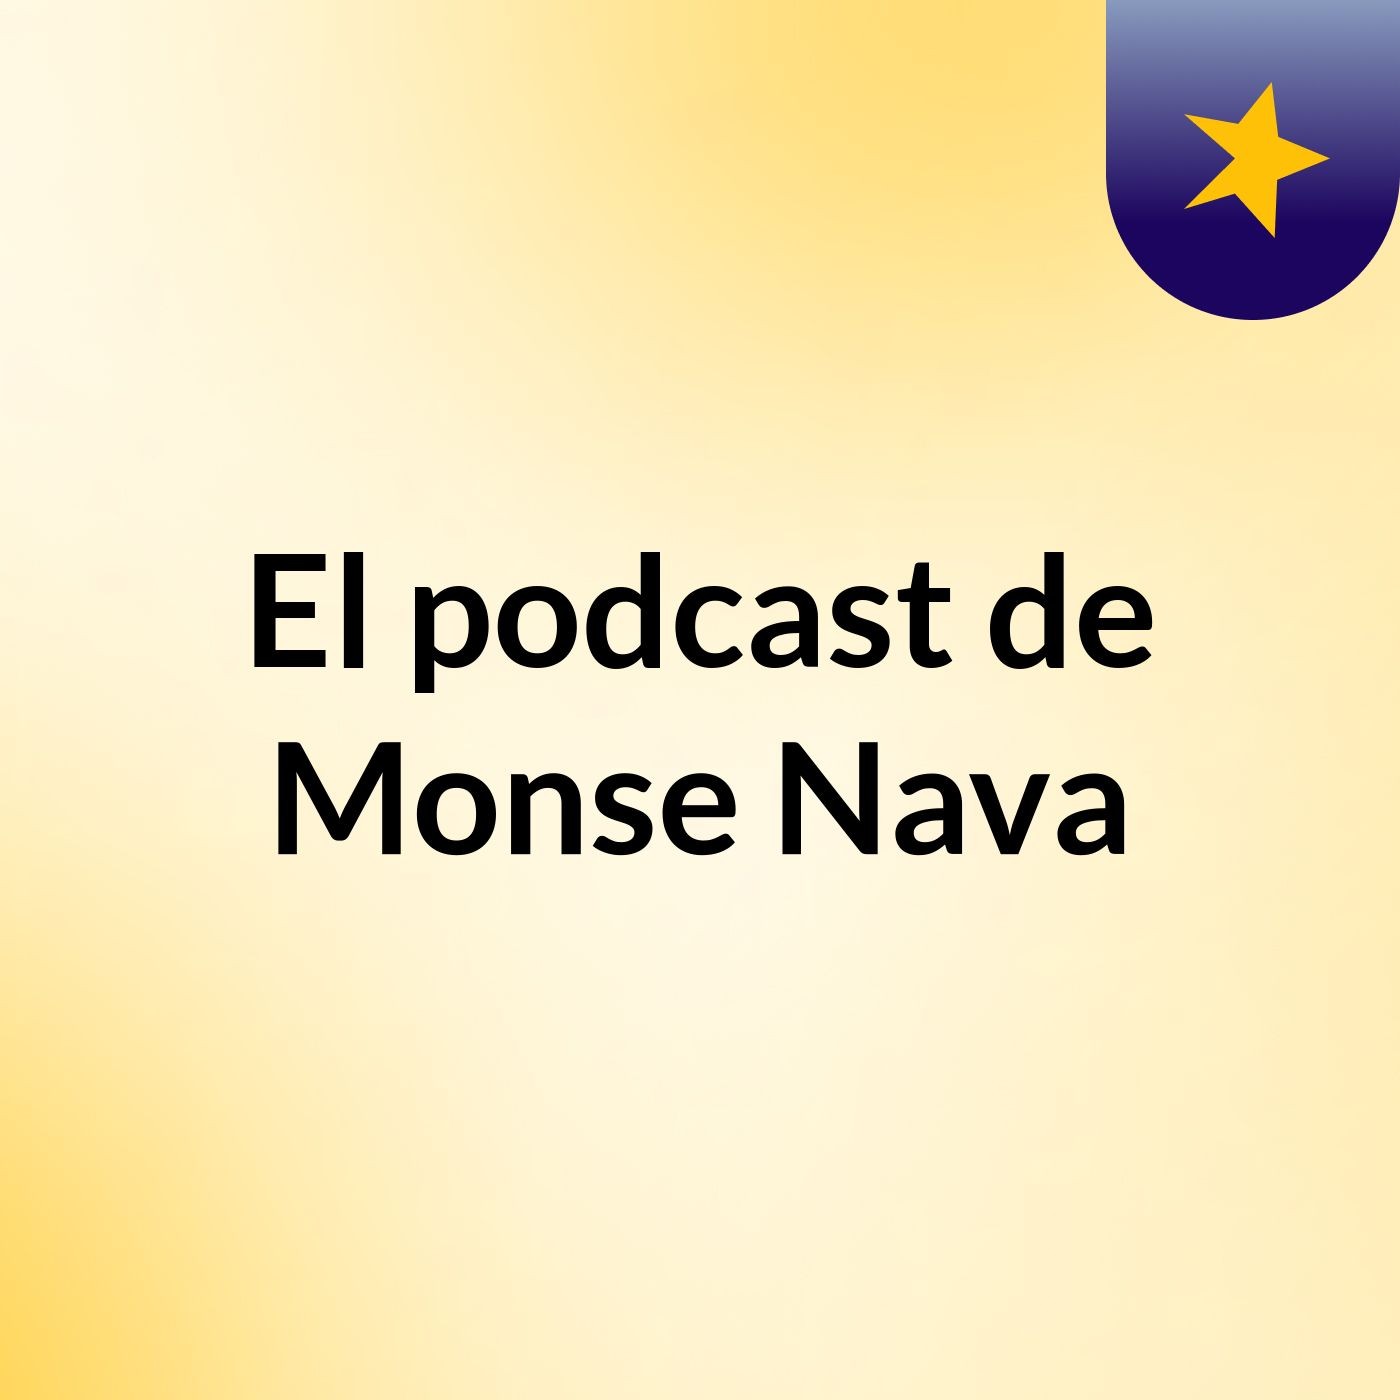 El podcast de Monse Nava